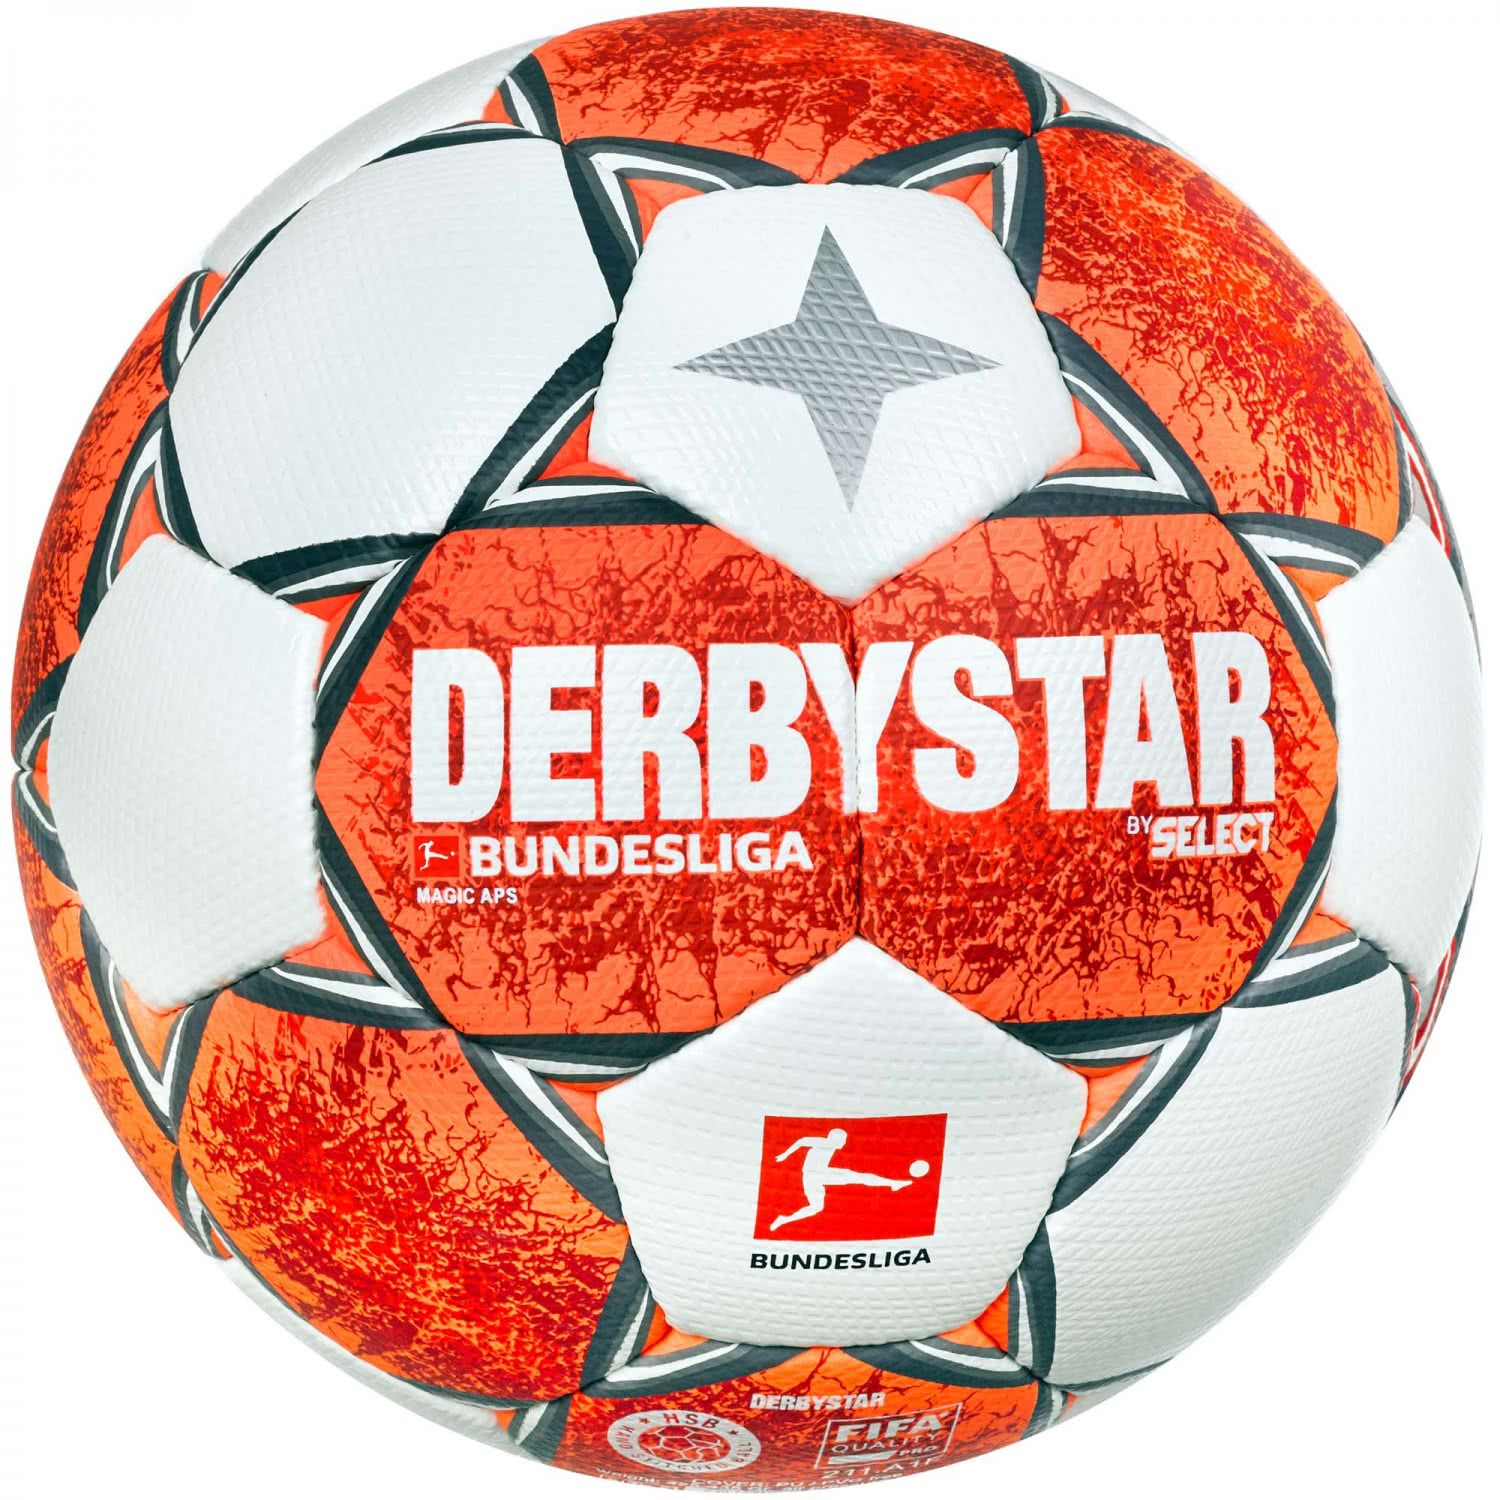 Derbystar Fußball Junior v20 Größe 3 s-light weiß-grün 17223 einzeln oder Set 